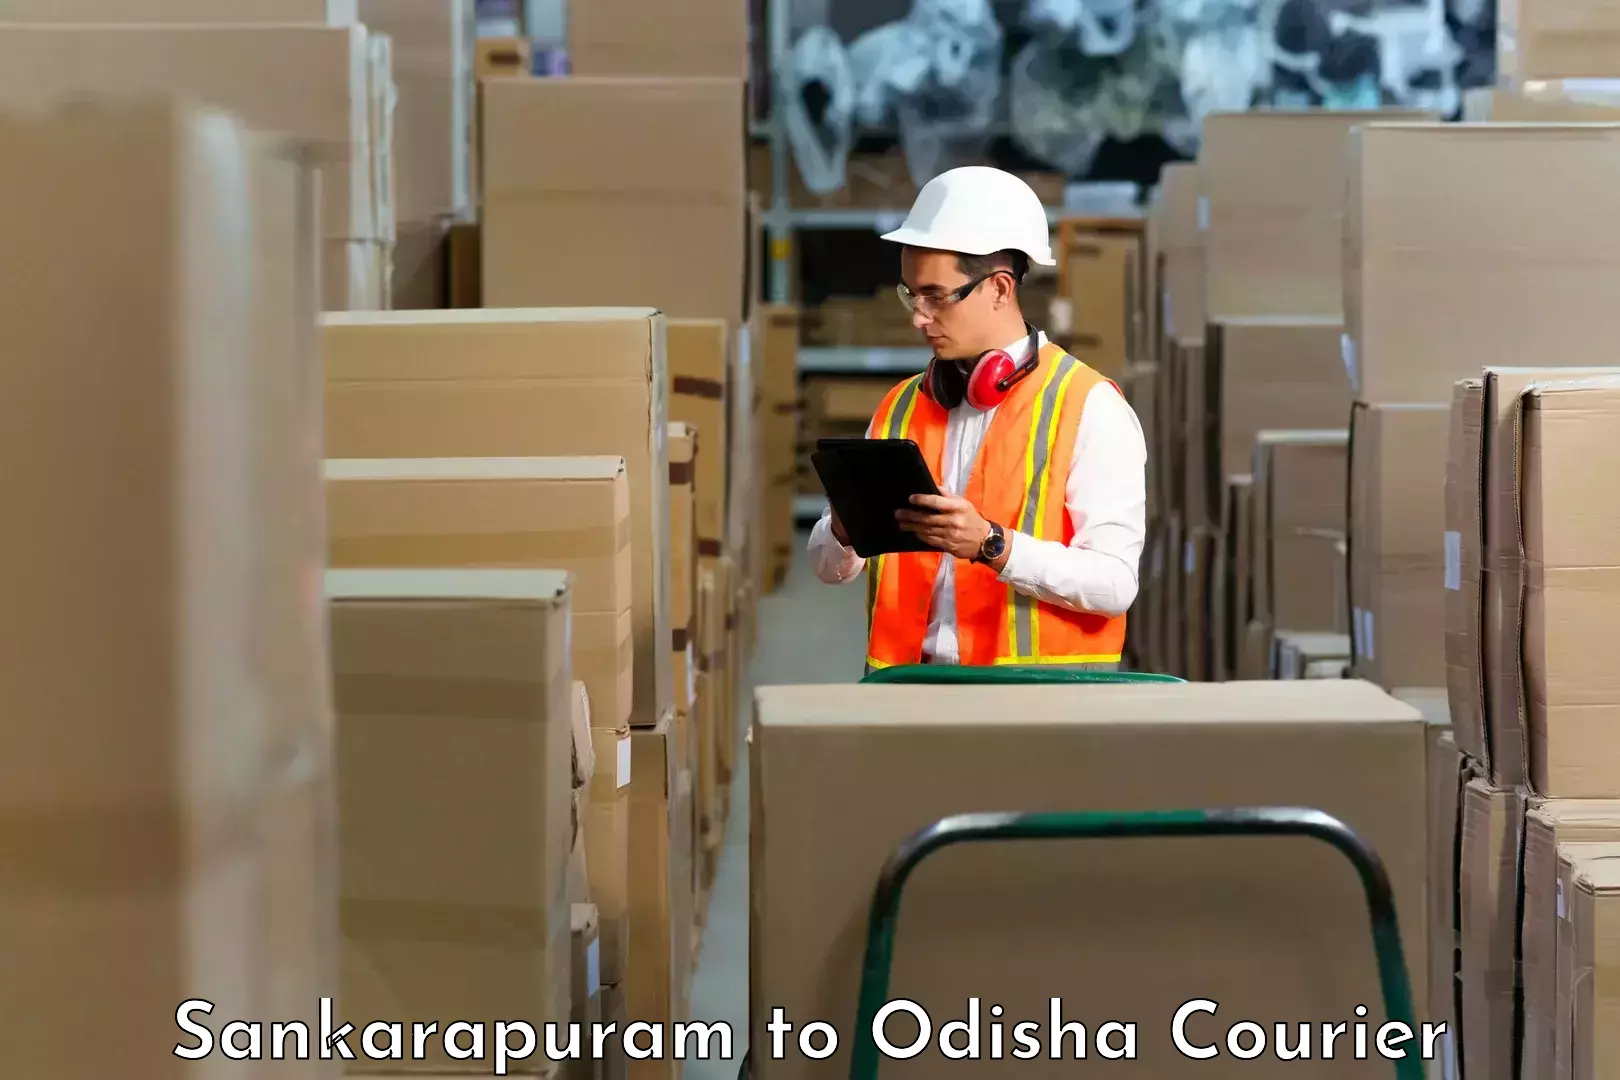 Smart shipping technology Sankarapuram to Dhamanagar